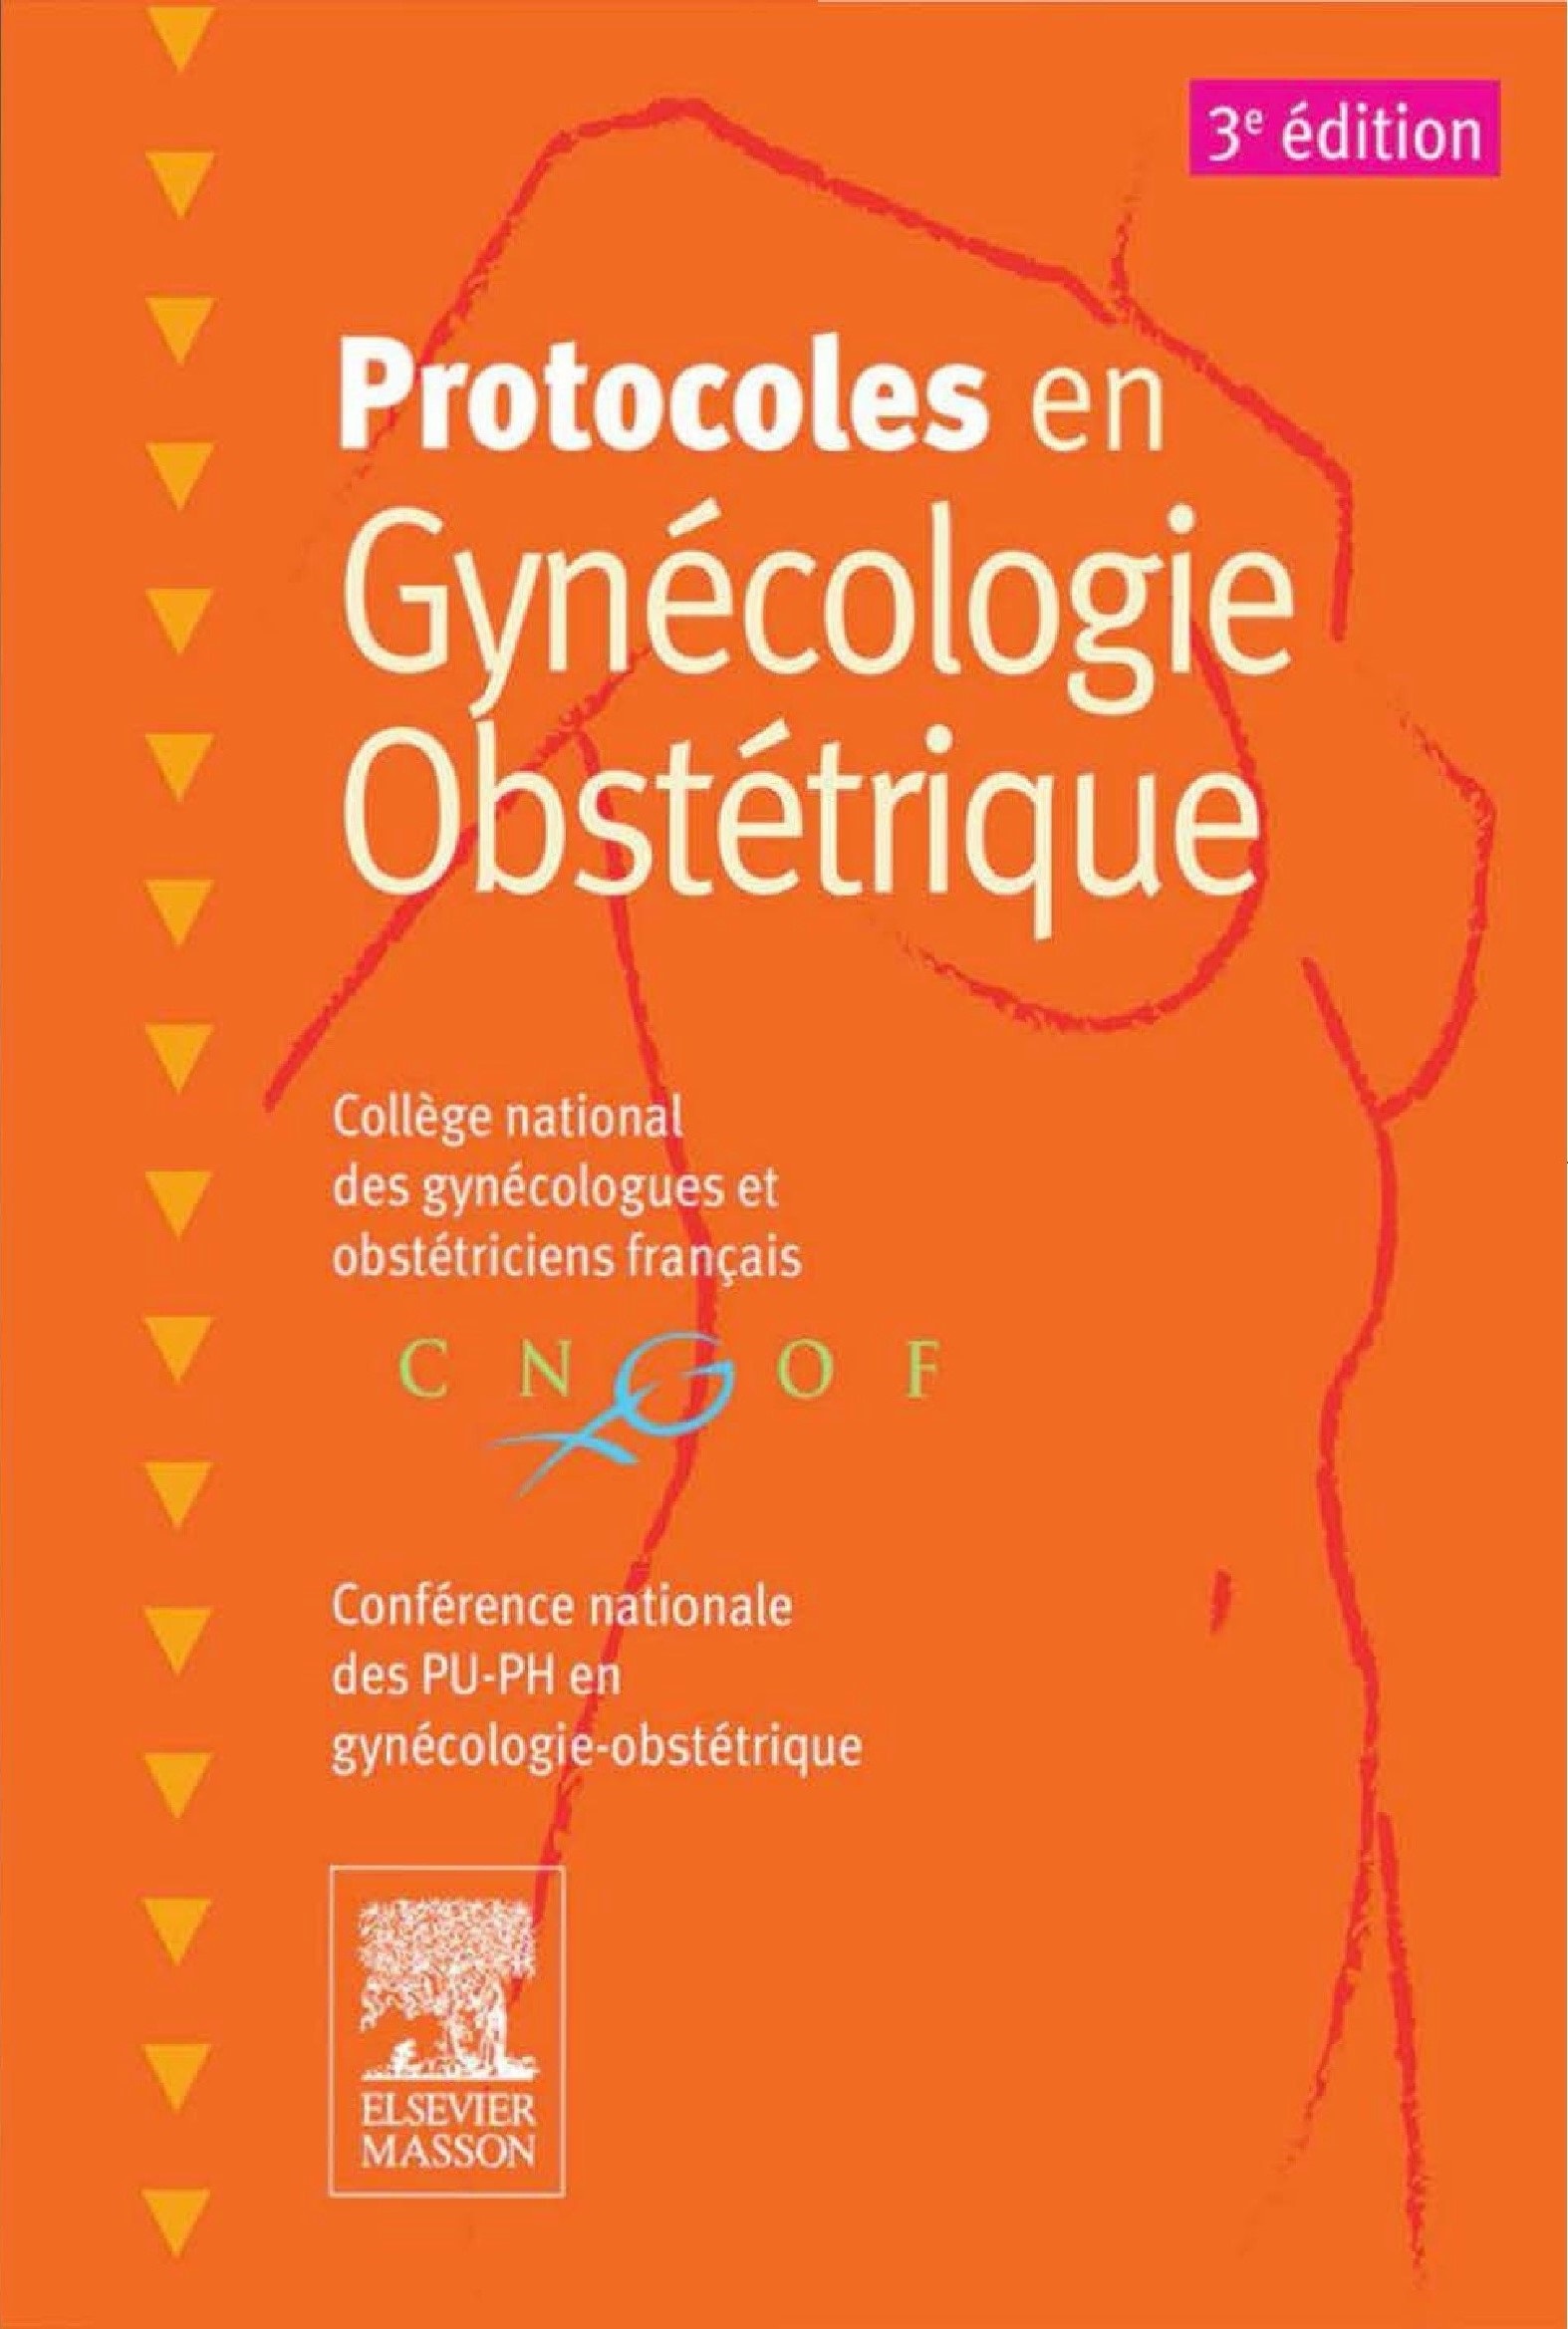 Livres Médicales - Protocoles en Gynécologie Obstétrique 2015 Protoc10